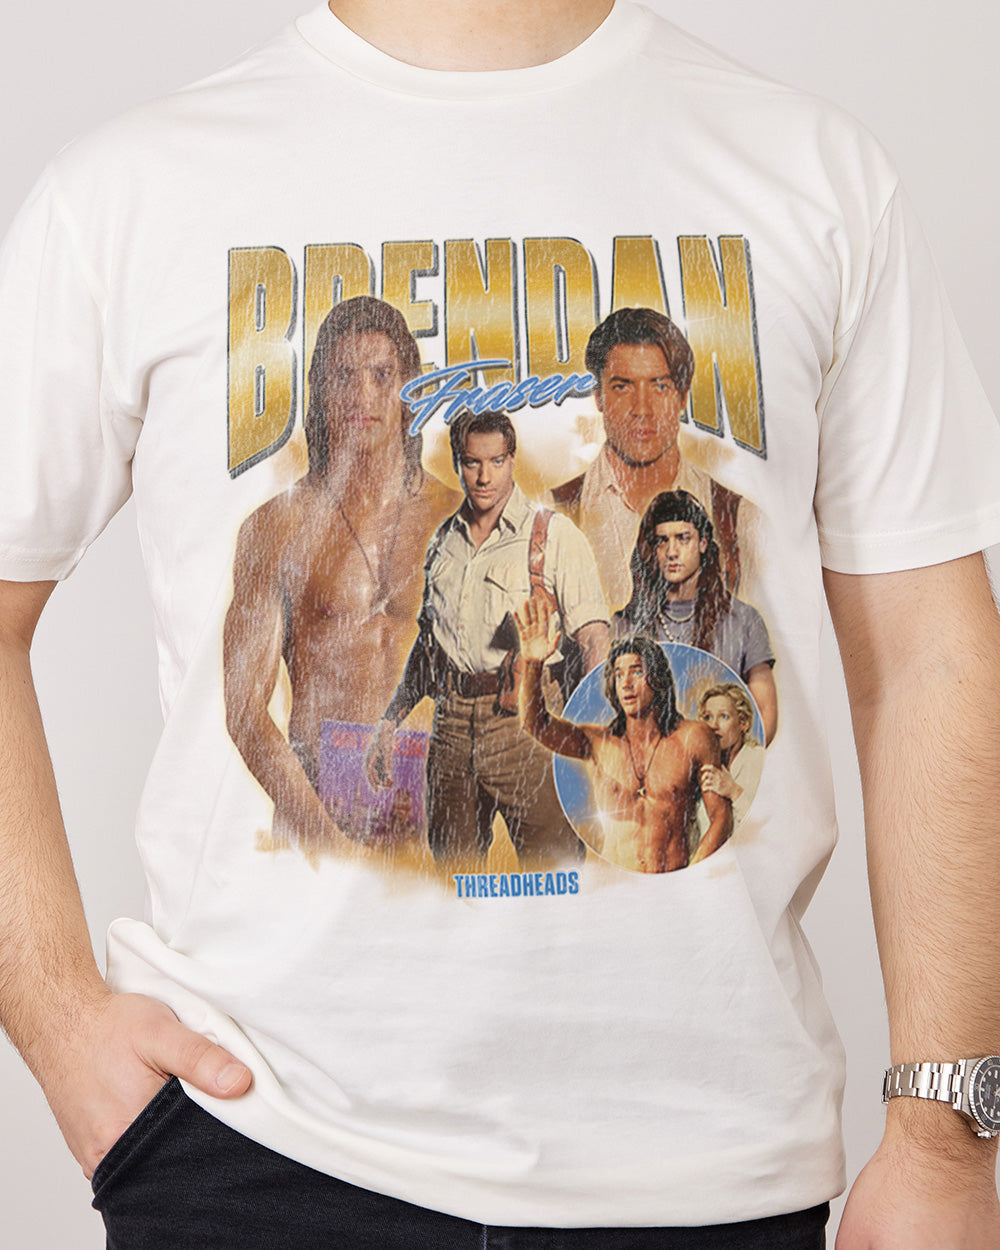 Brendan Fraser T-Shirt Australia Online Natural